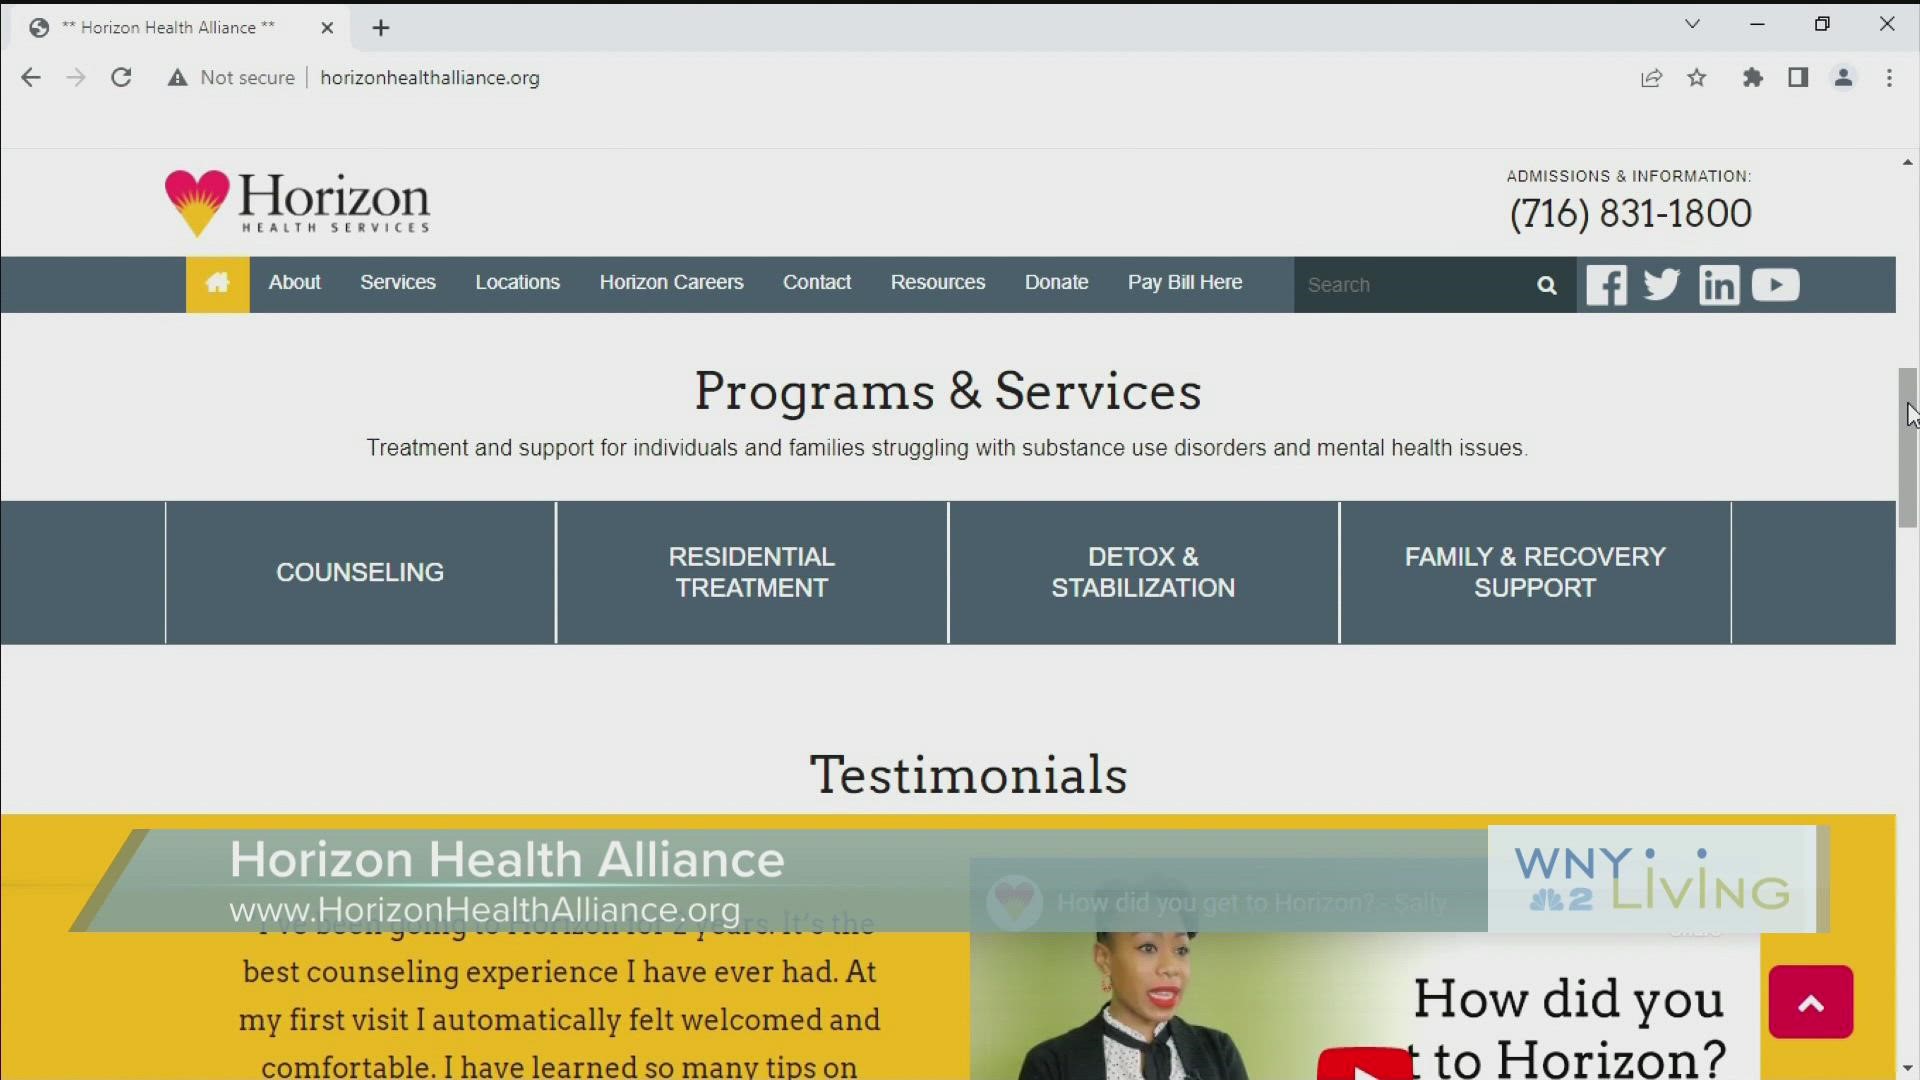 WNY Living - January 7 - Horizon Health Alliance (THIS VIDEO IS SPONSORED BY HORIZON HEALTH ALLIANCE)